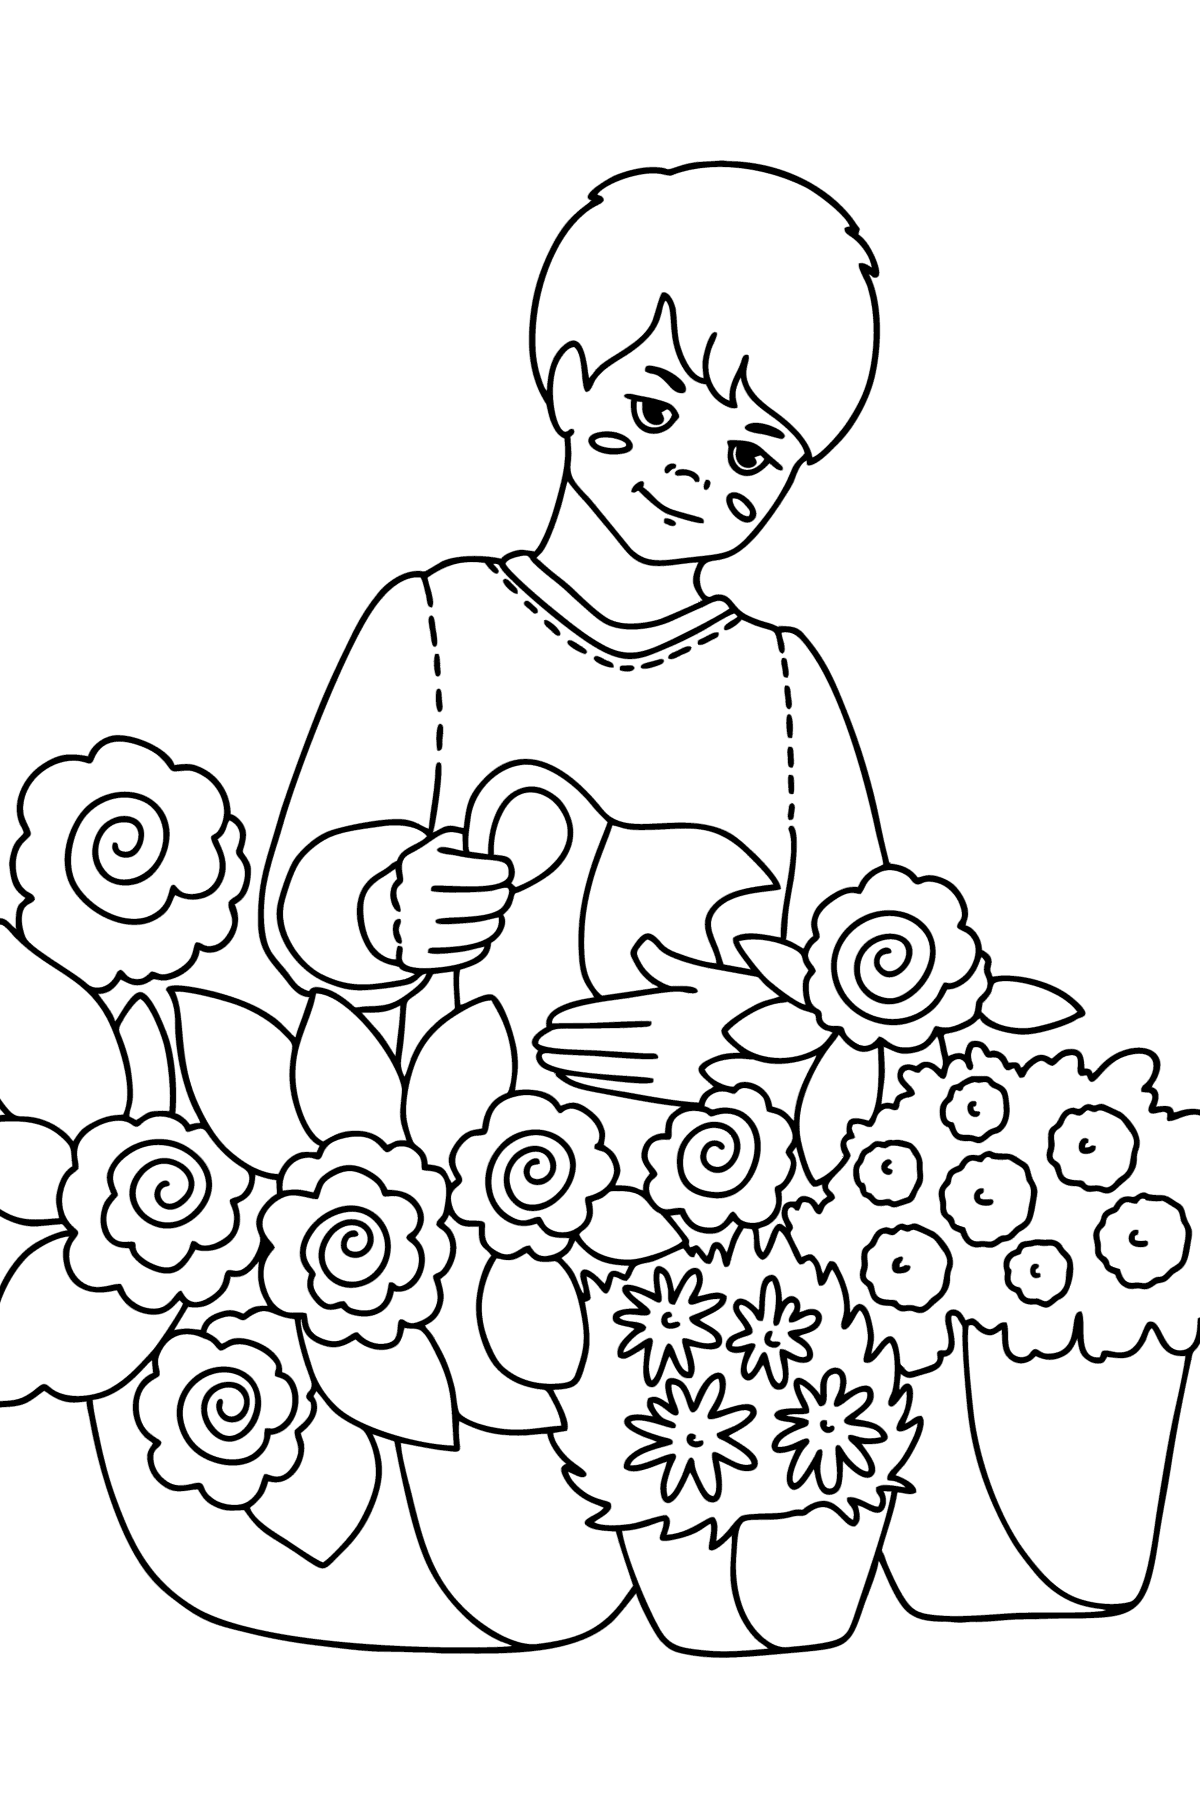 Desenho Menino regando flores para colorir - Imagens para Colorir para Crianças